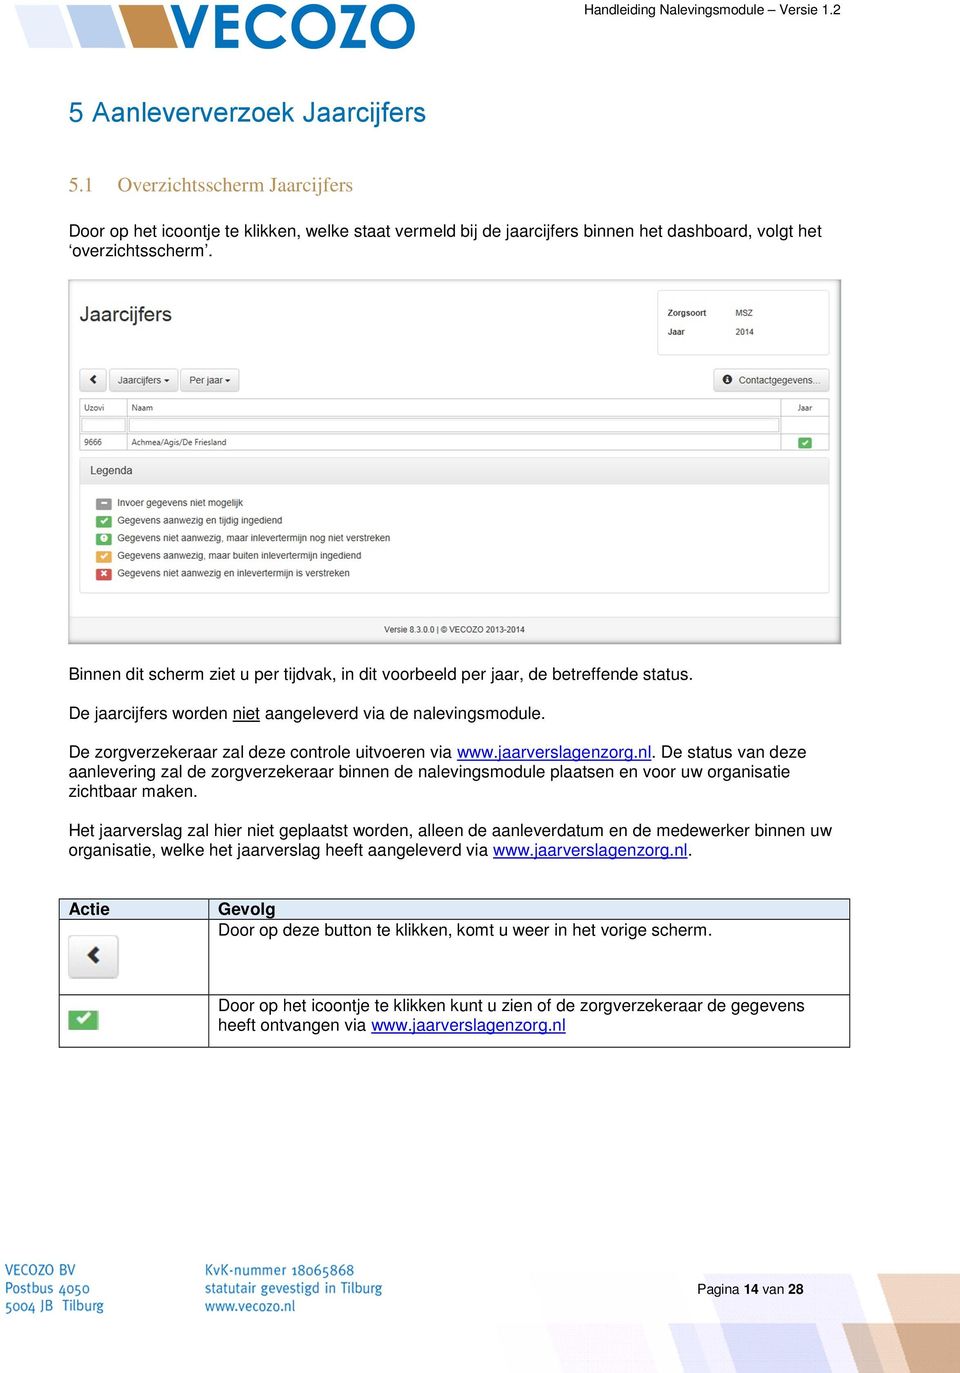 De zorgverzekeraar zal deze controle uitvoeren via www.jaarverslagenzorg.nl.